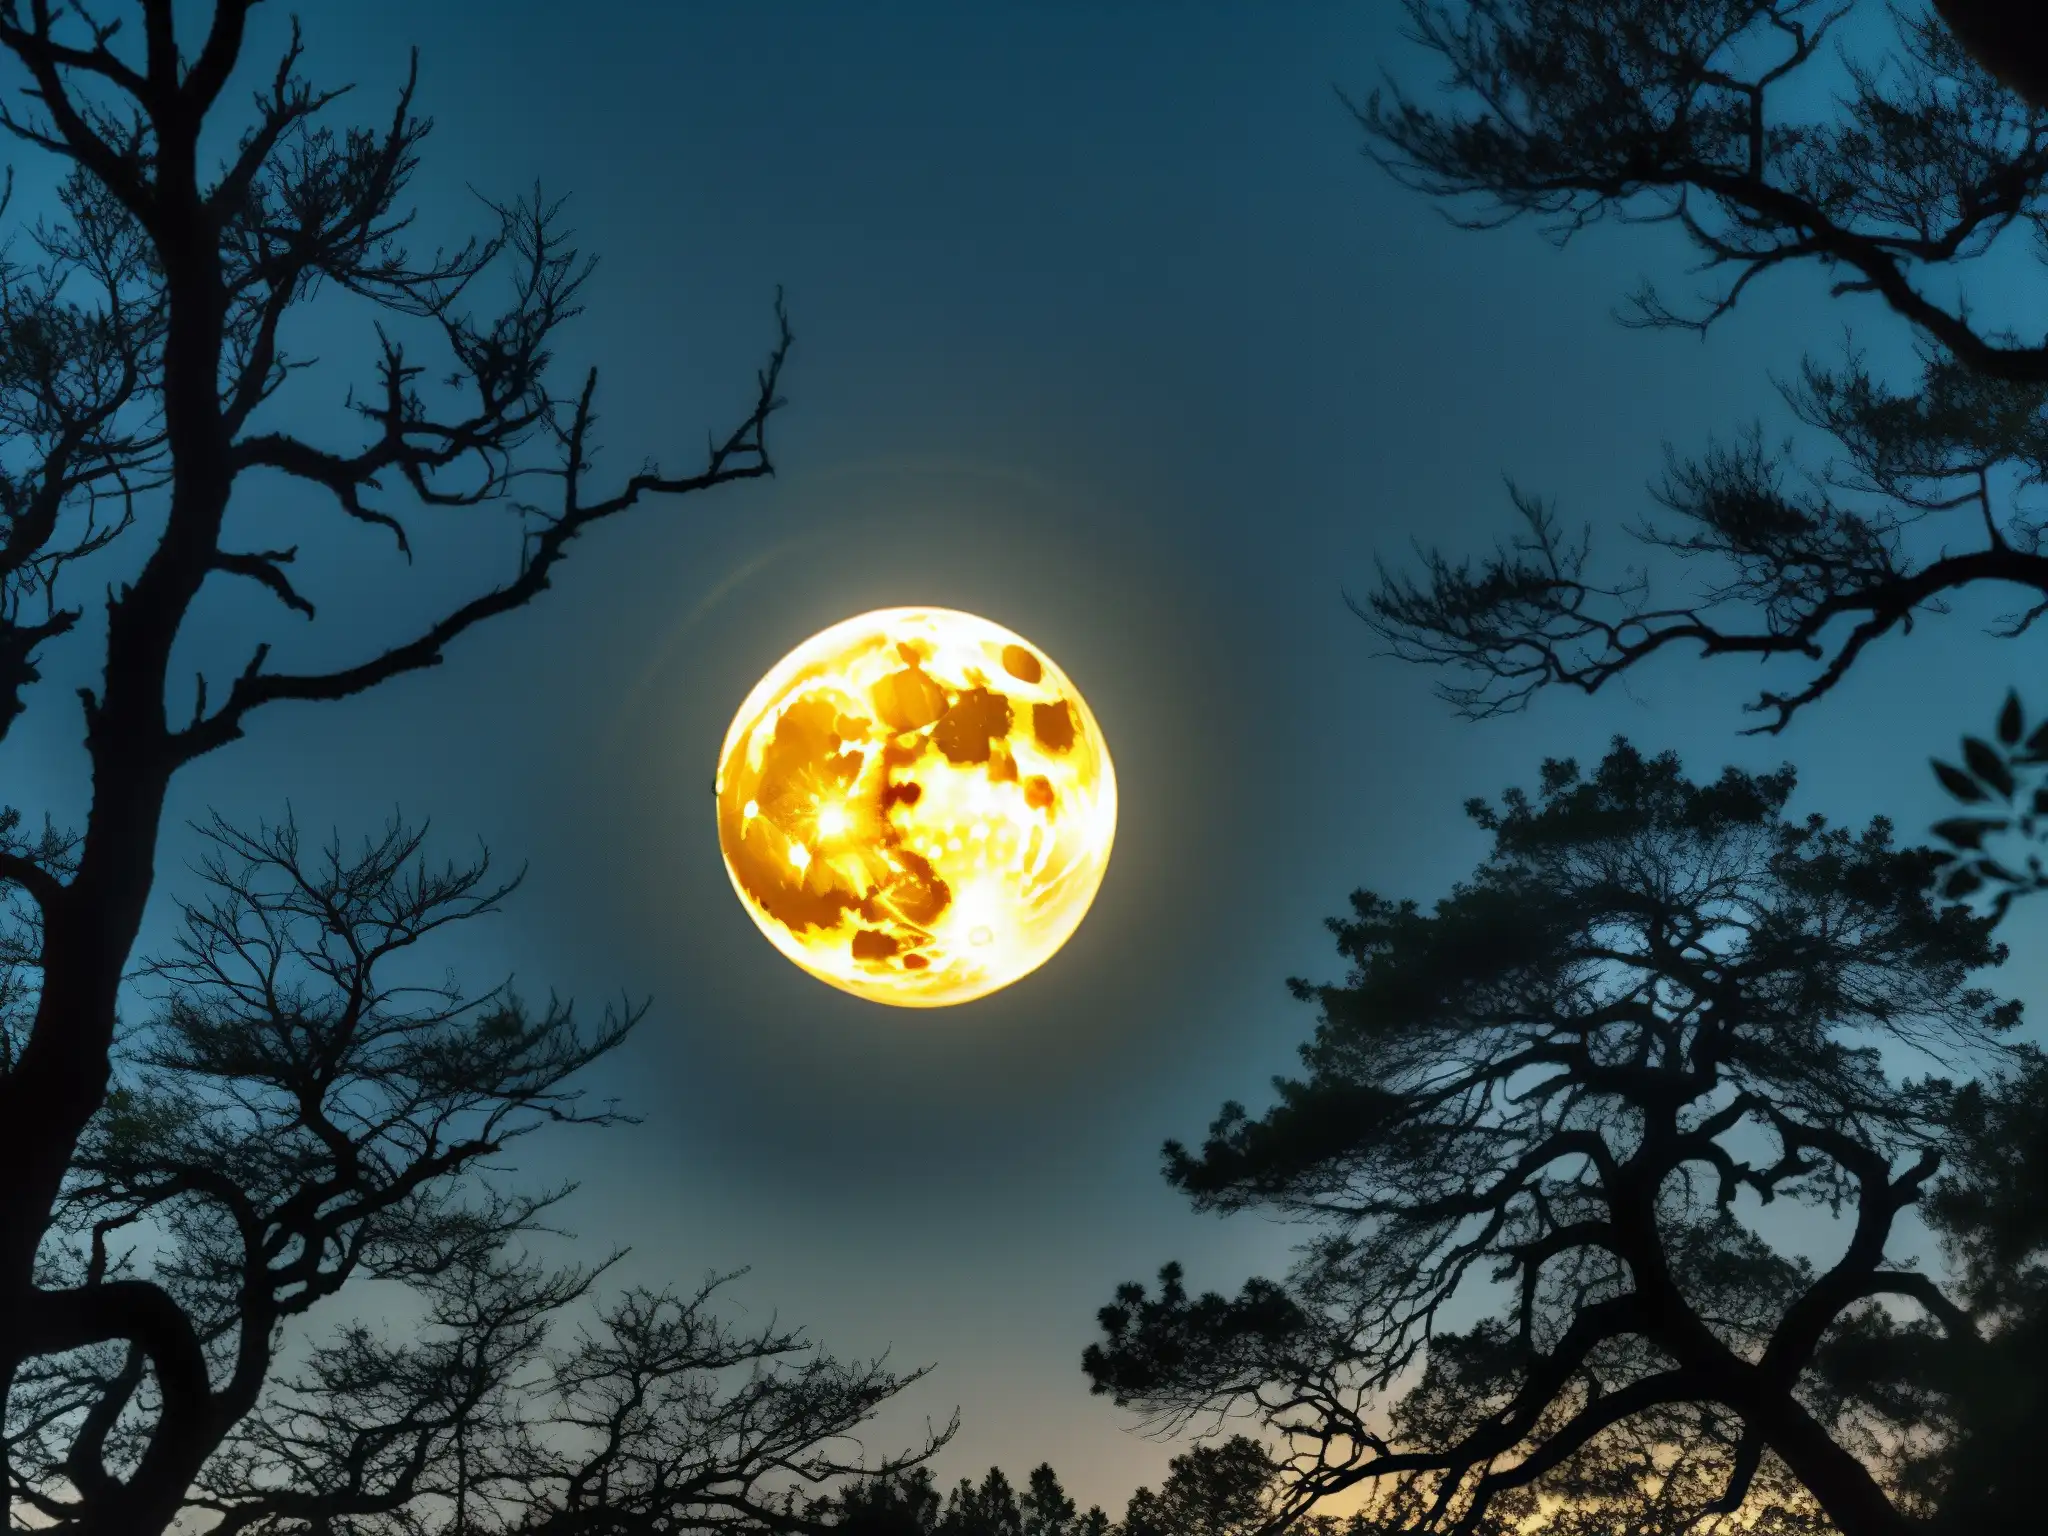 Un paisaje misterioso de un bosque brumoso iluminado por la luna llena, con la silueta de una figura en la distancia y los ojos brillantes